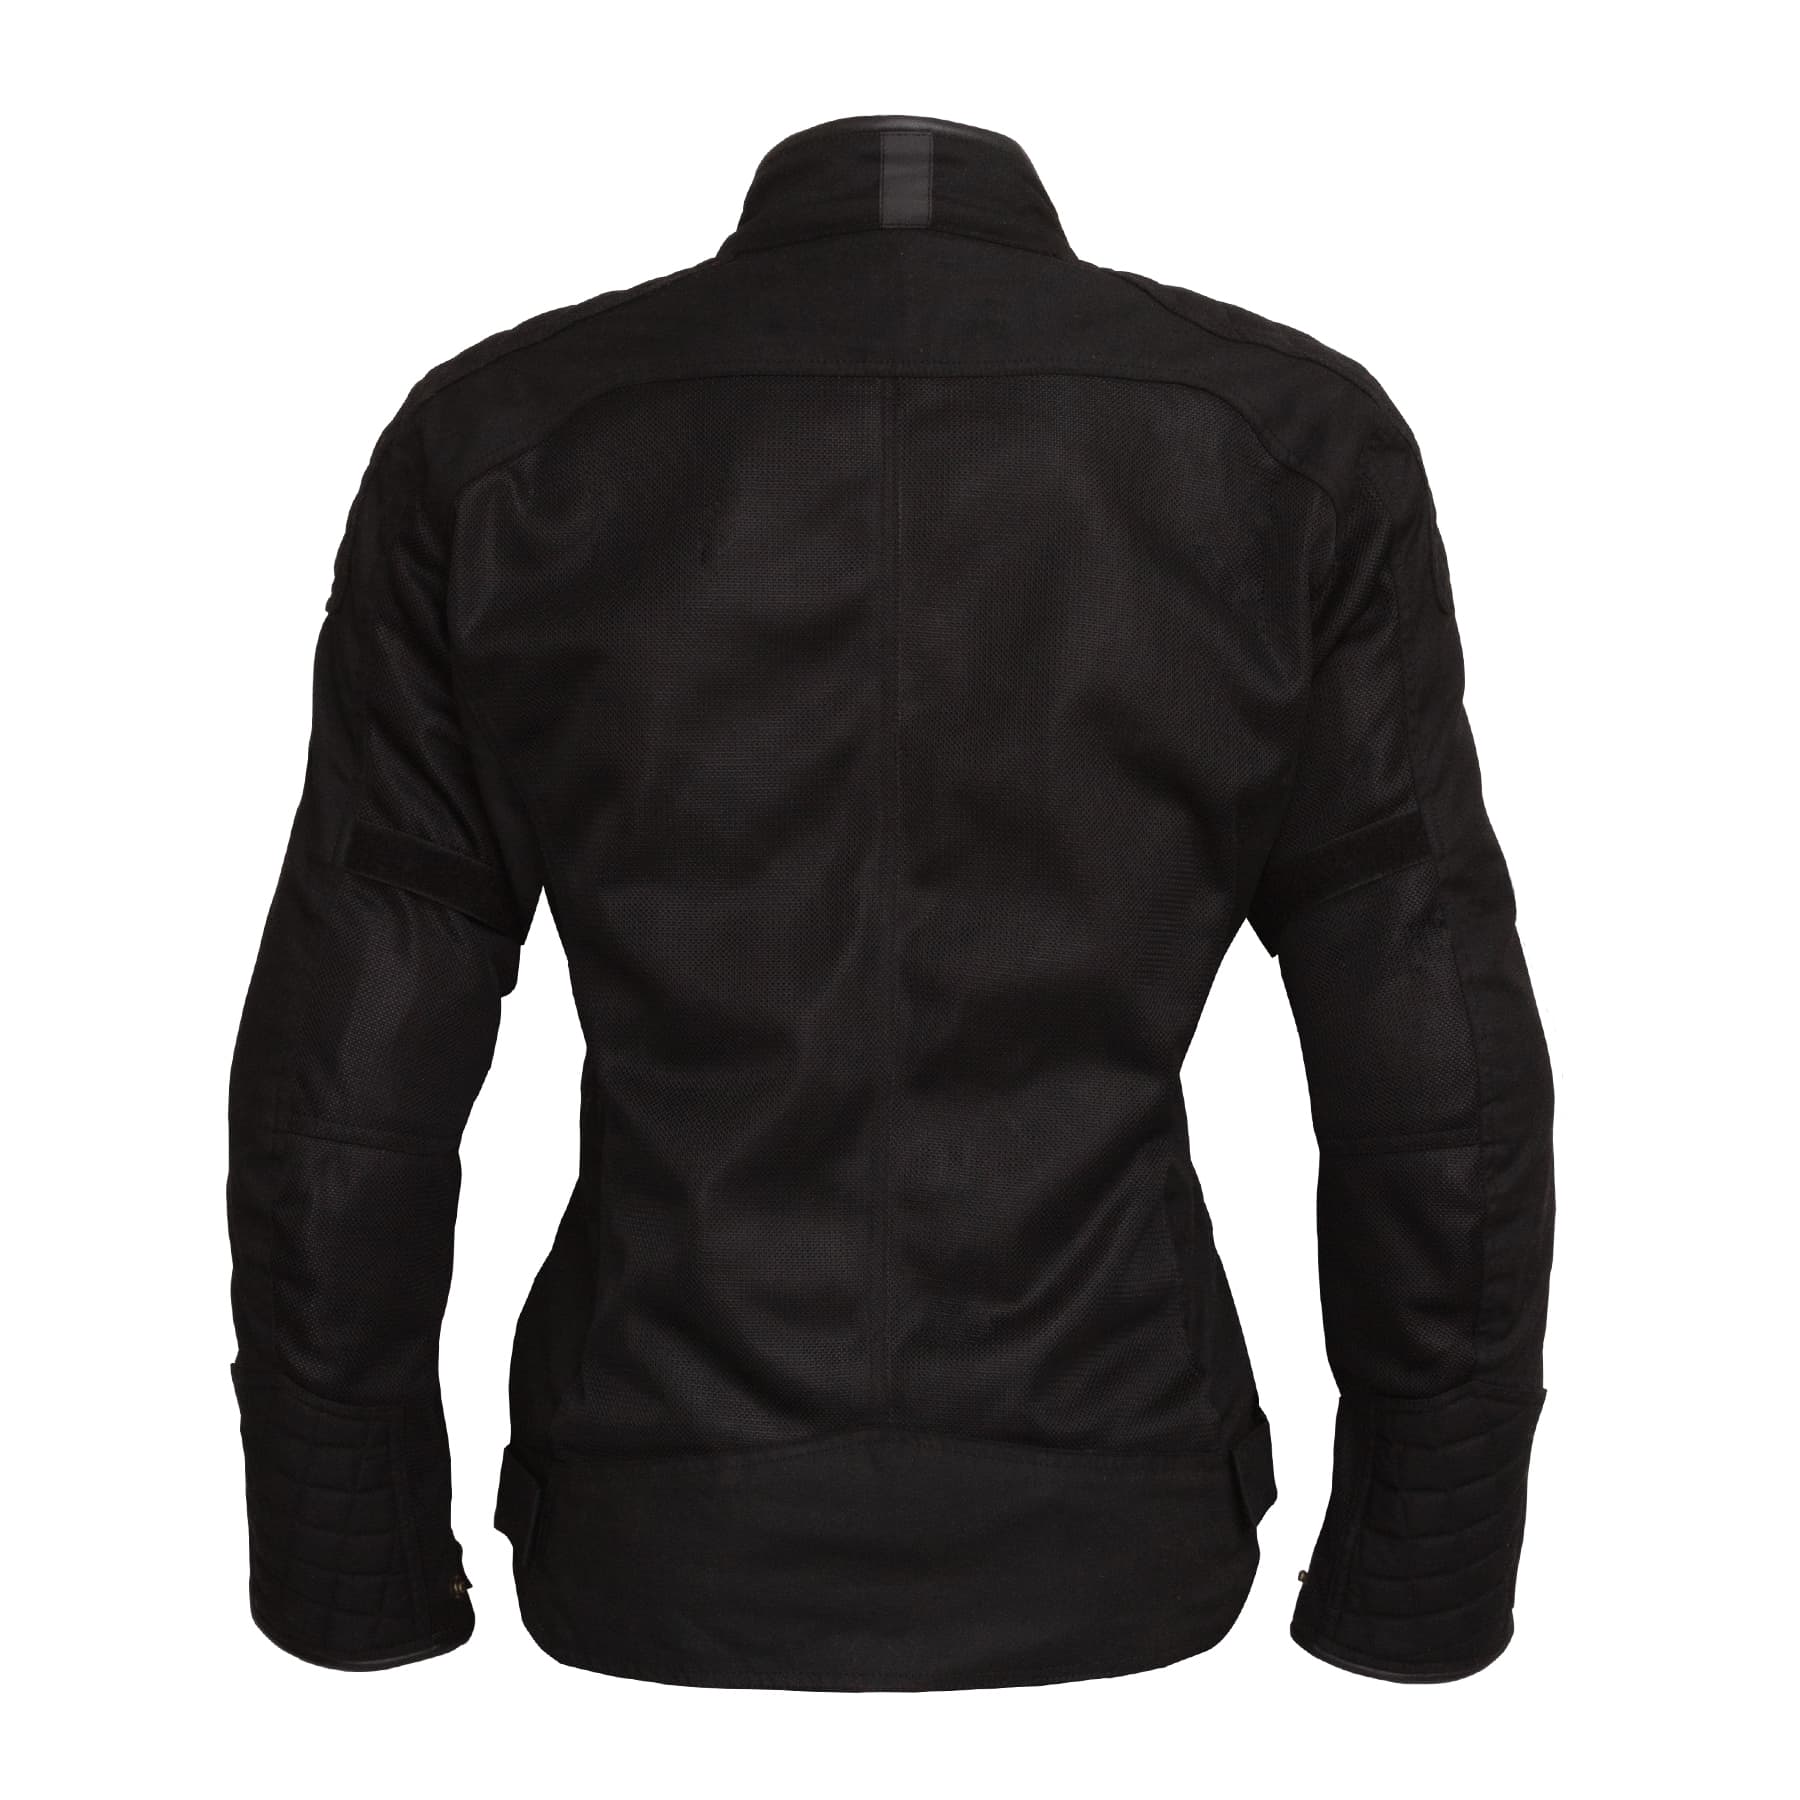 Merlin Shenstone Ladies jacket in black